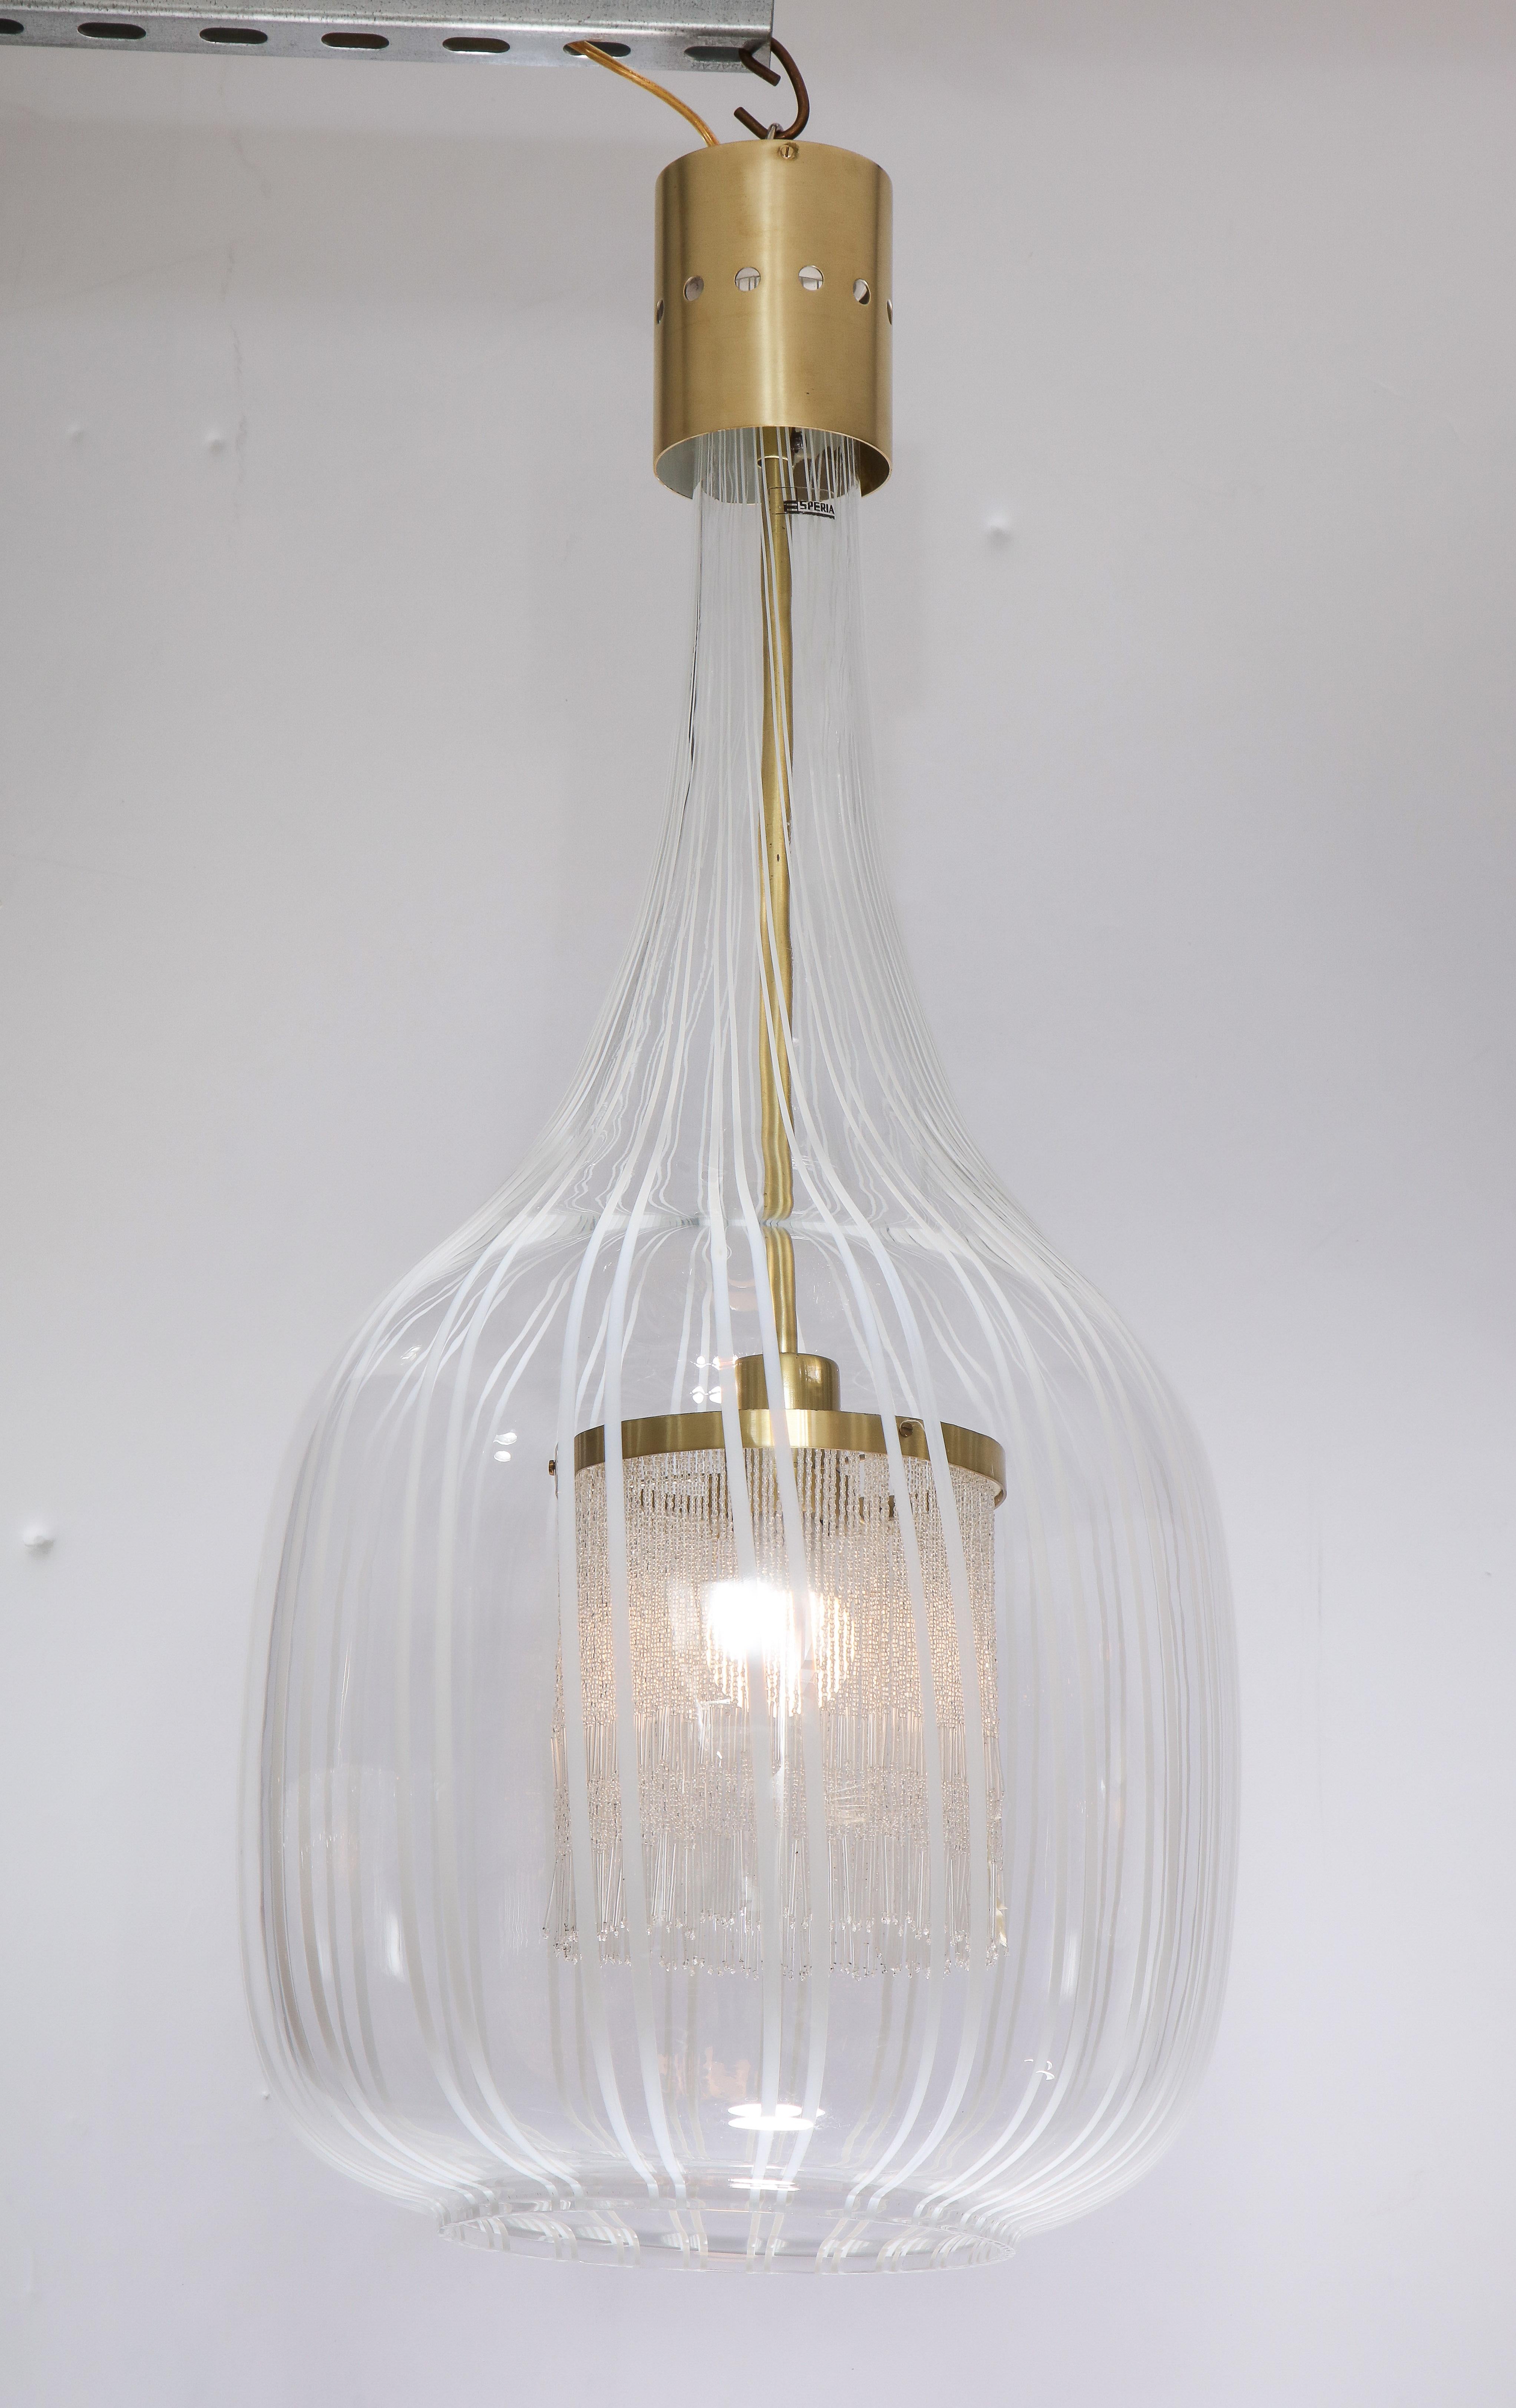 Un lustre suspendu unique et magnifique du designer Angelo Brotto (1914-2002), réalisé pour Esperia en verre soufflé de Murano avec des lignes verticales blanches. L'intérieur est équipé d'une frange qui entoure l'ampoule, créant une lueur